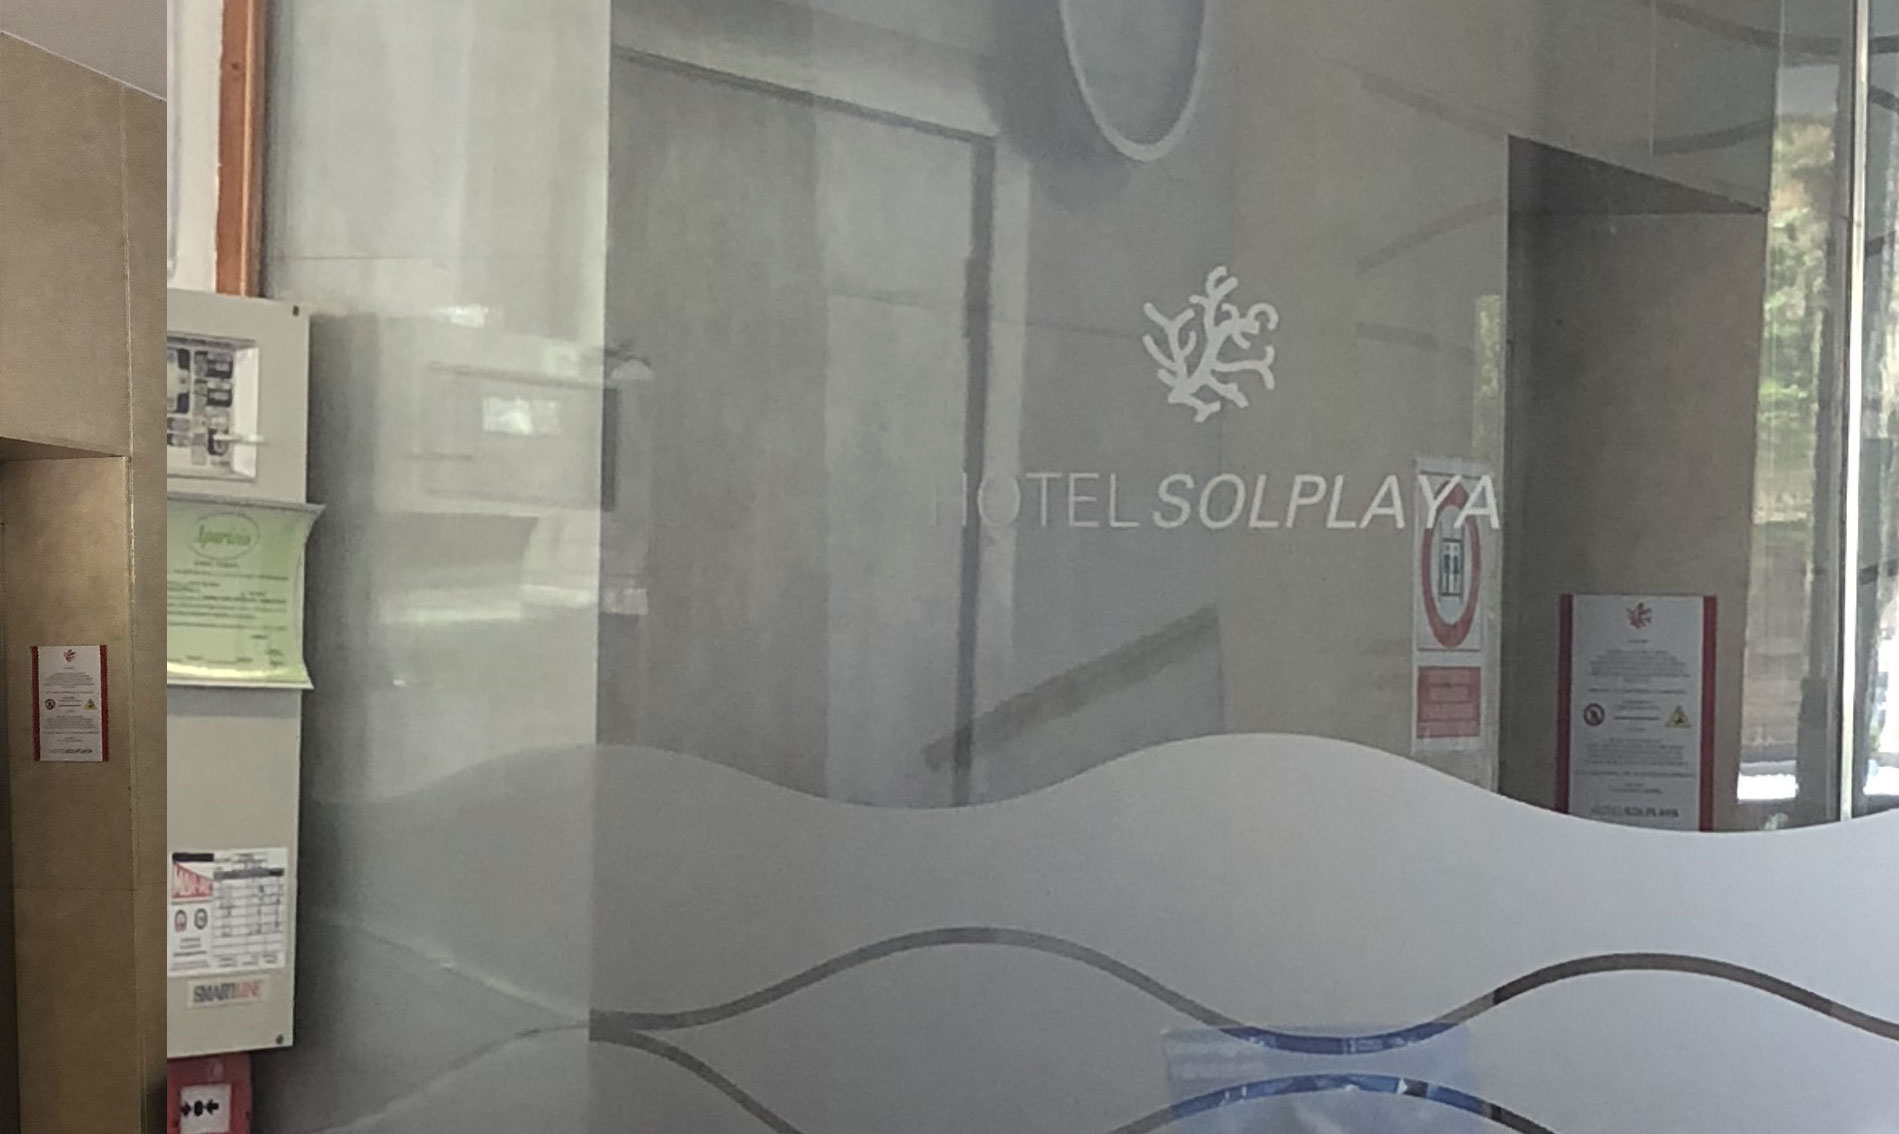 Comunicacion visual - rotulación - Hotel Solplaya